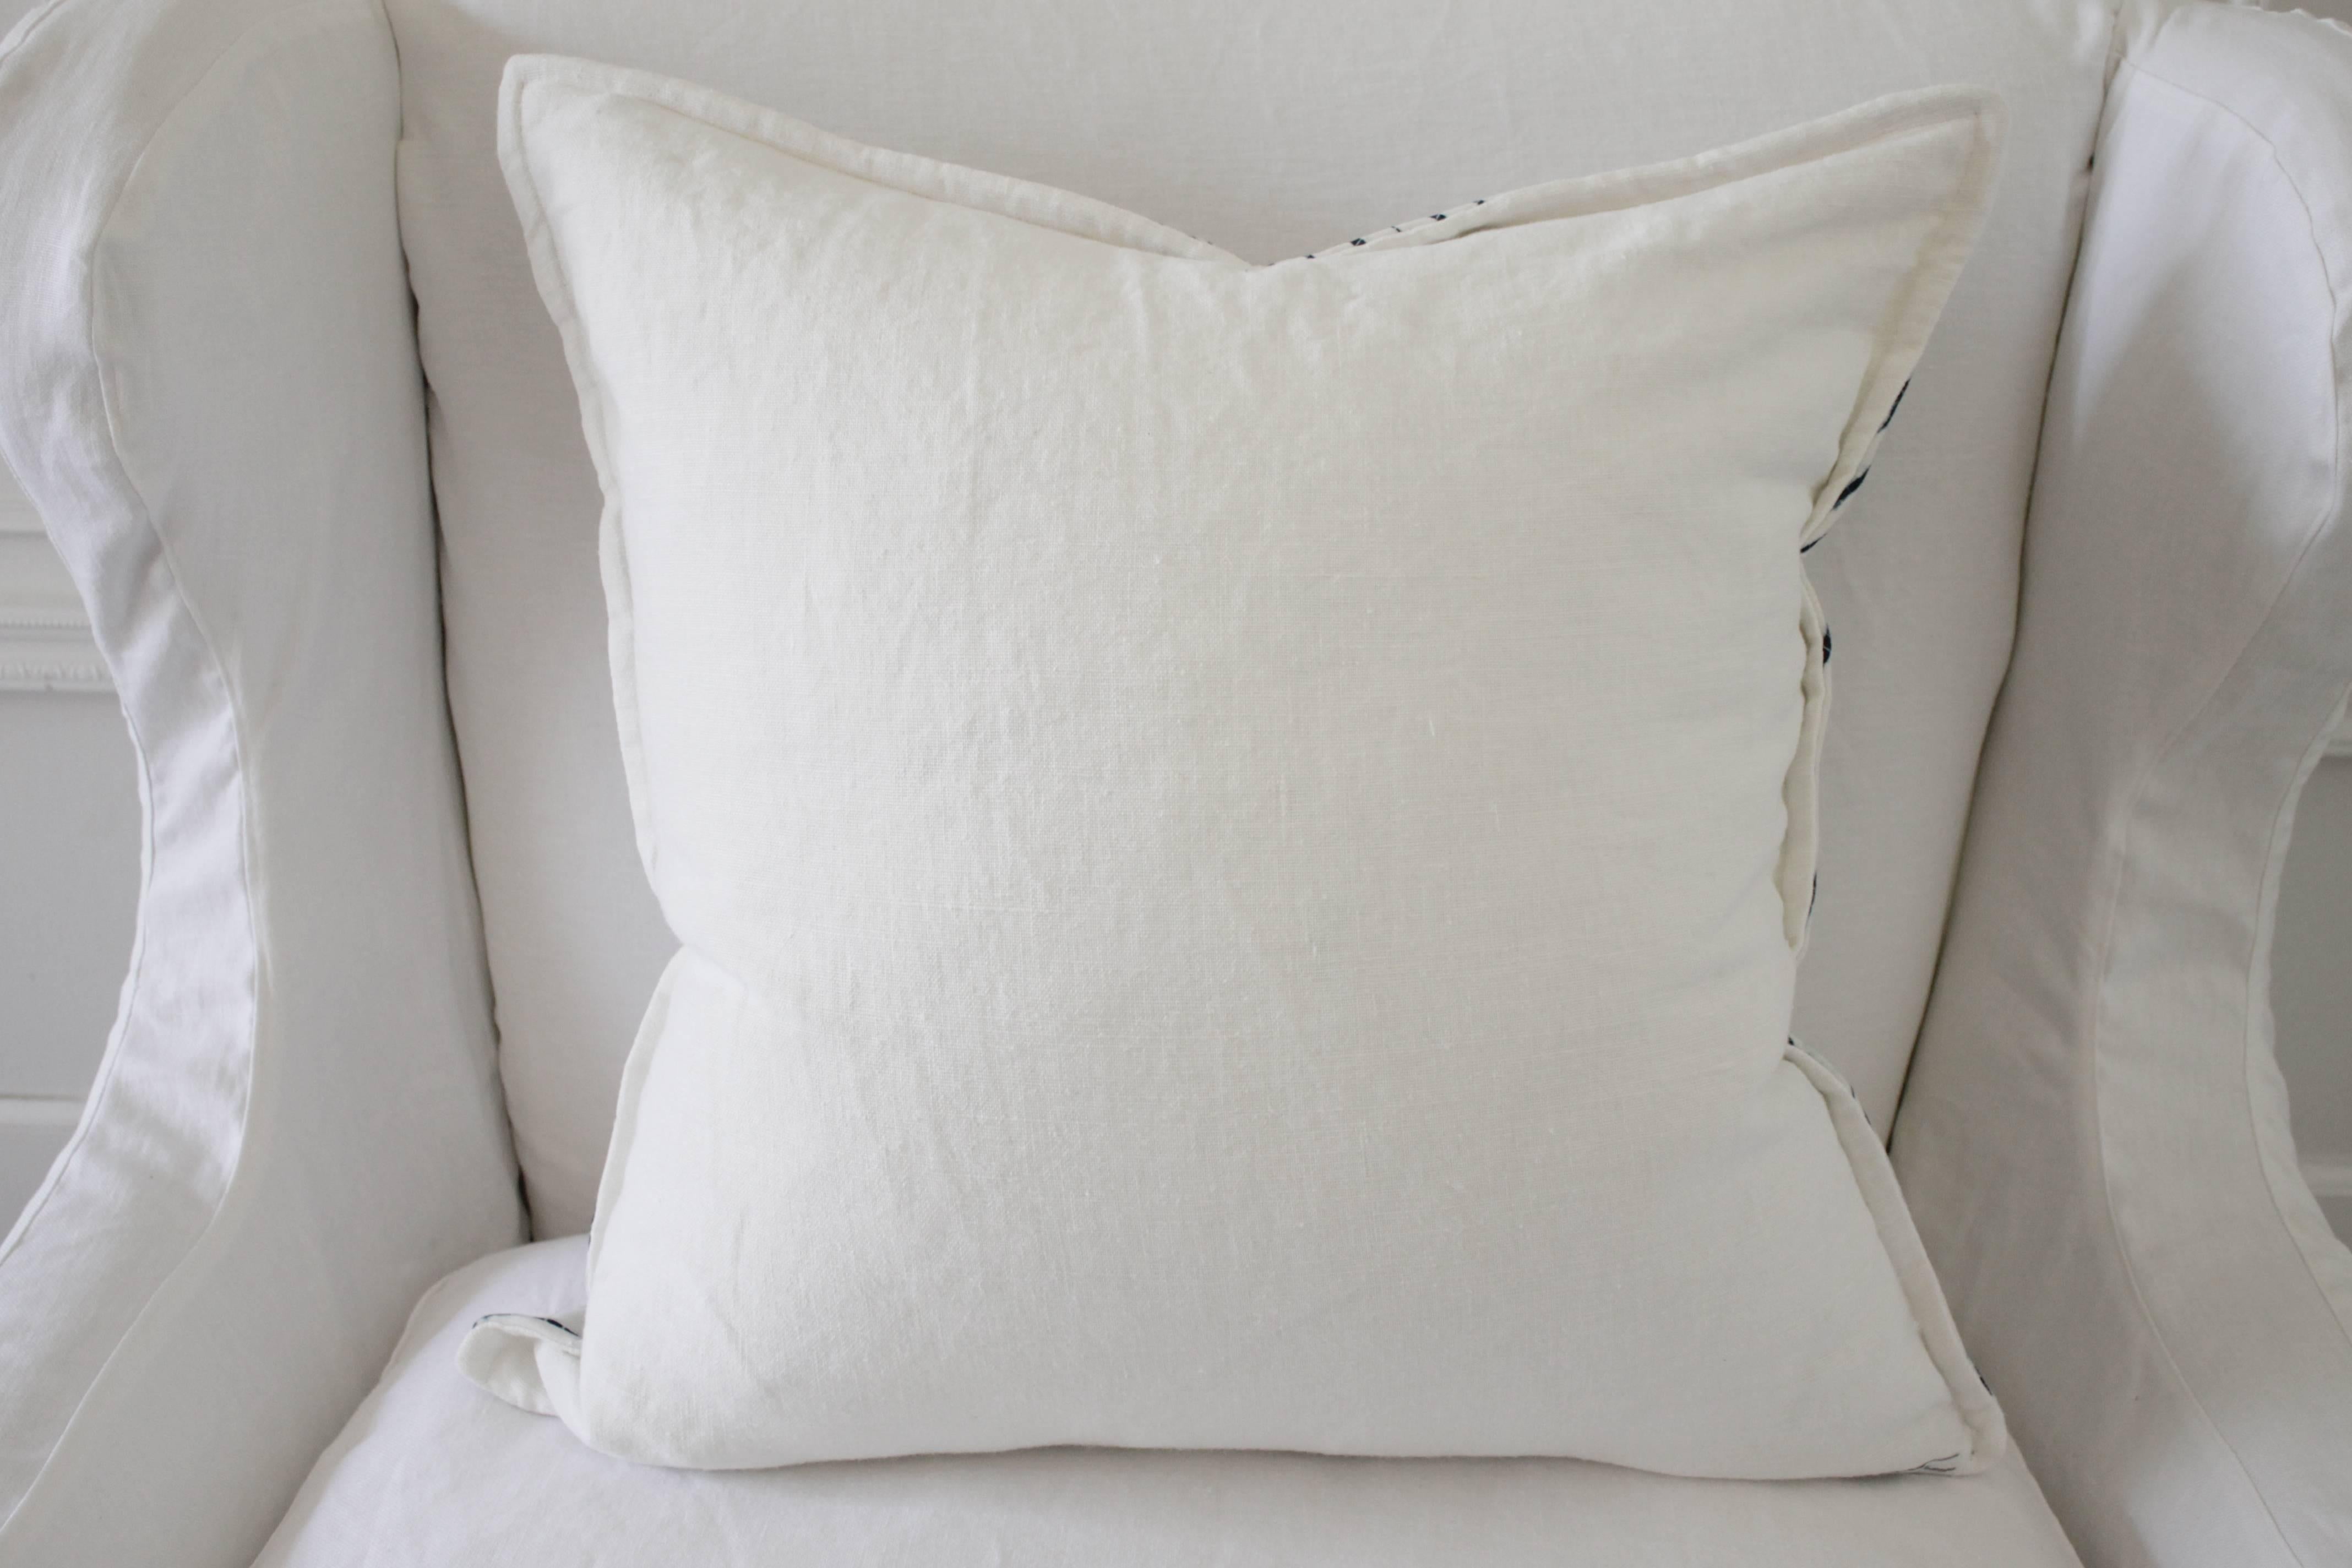 Cotton Vintage Shibori Dyed Textile Pillow with White Linen